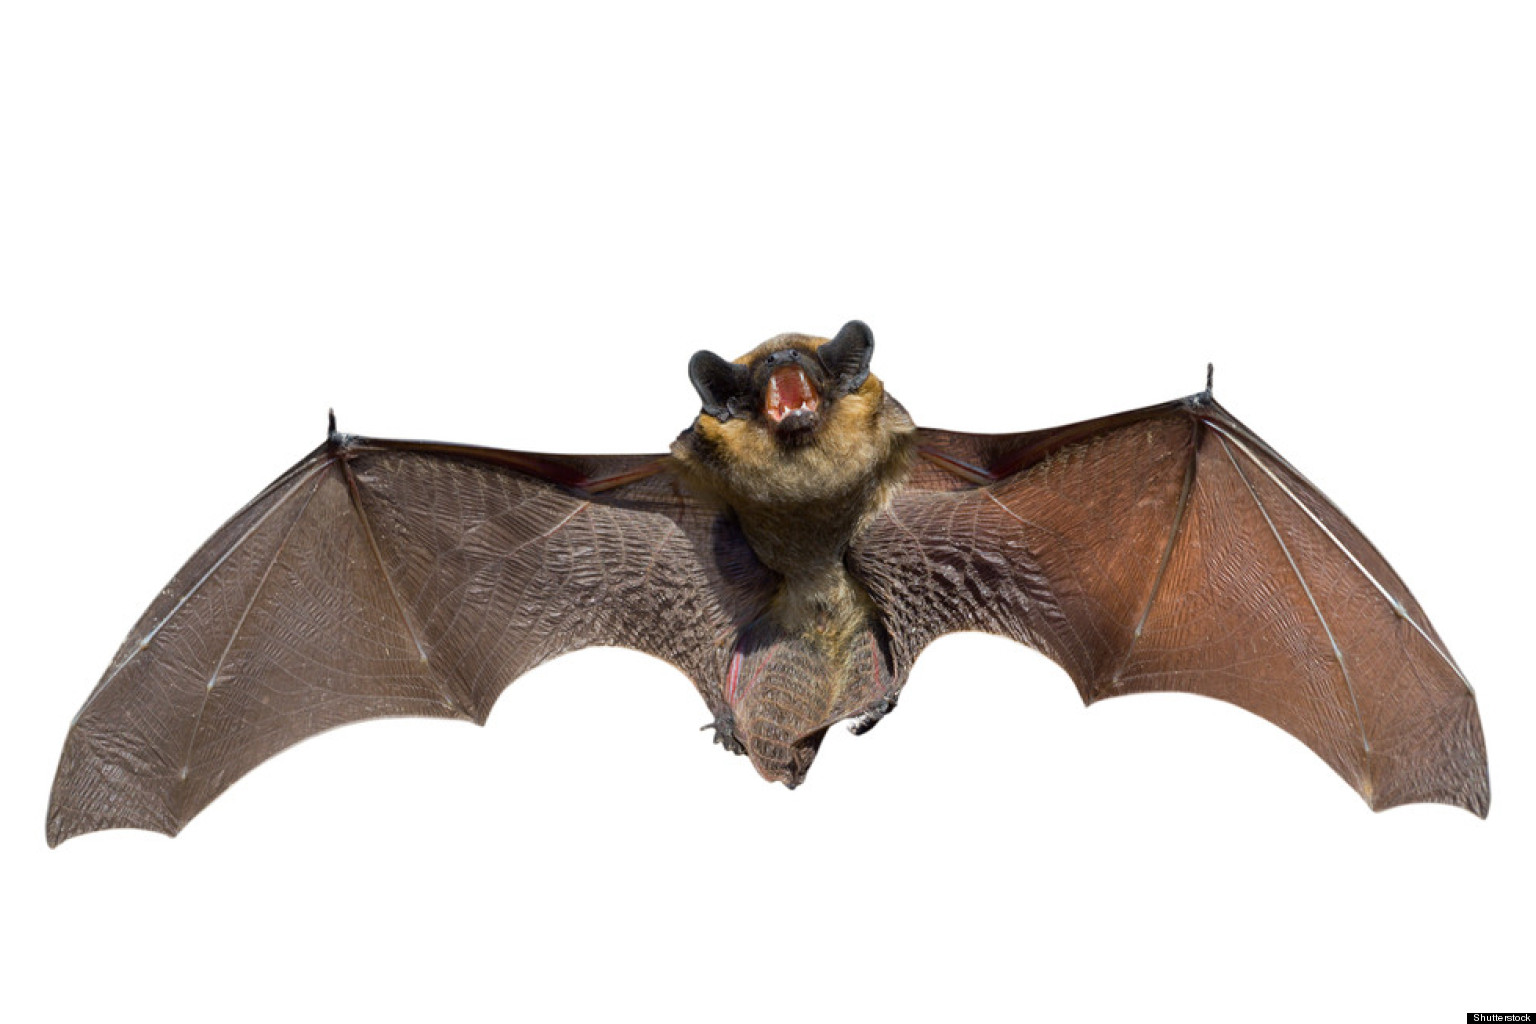 New Coronavirus-Like Virus Found In Bats1536 x 1024